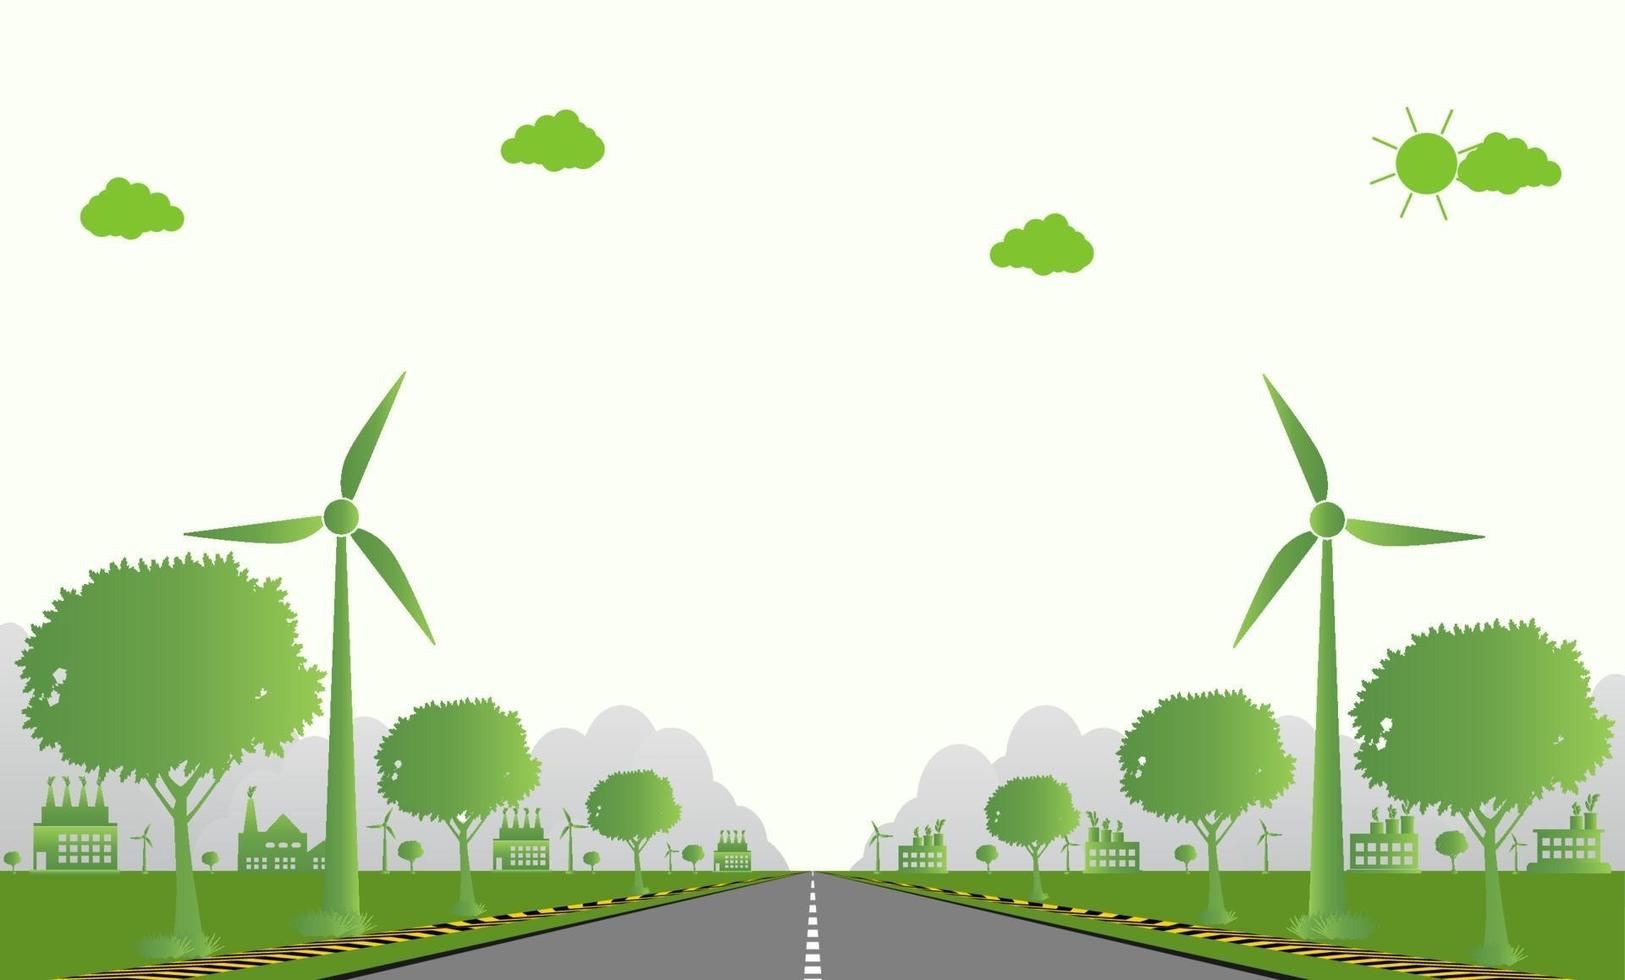 ecologia di fabbrica, icona dell'industria, turbine eoliche con alberi ed energia pulita del sole con idee di concetto ecologico su strada. illustrazione di vettore